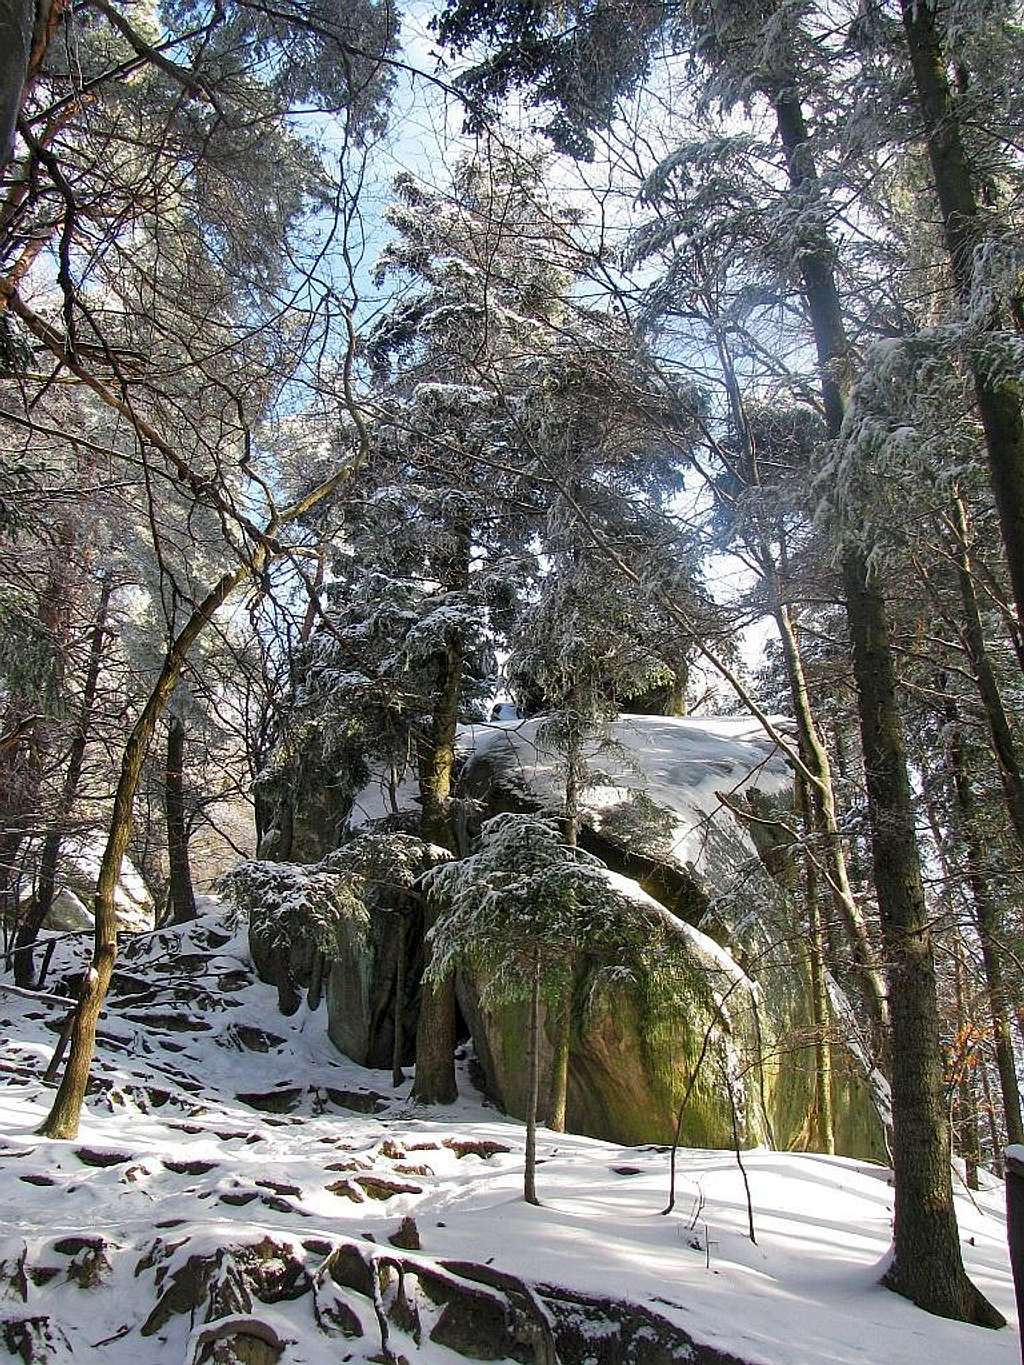 Prządki - first rock from entrance